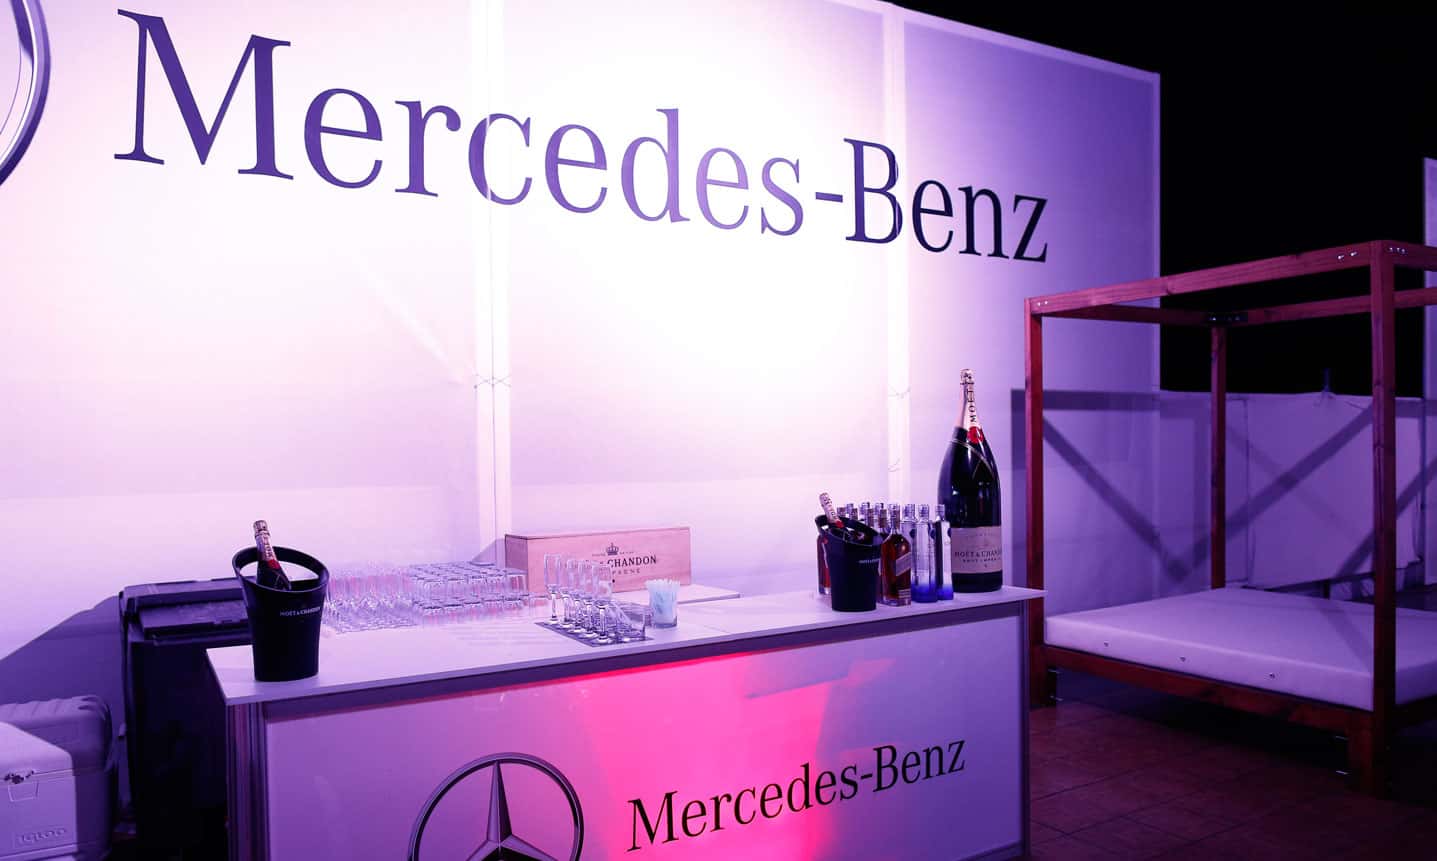 Mercedes-Benz Fashion Week Guanacaste